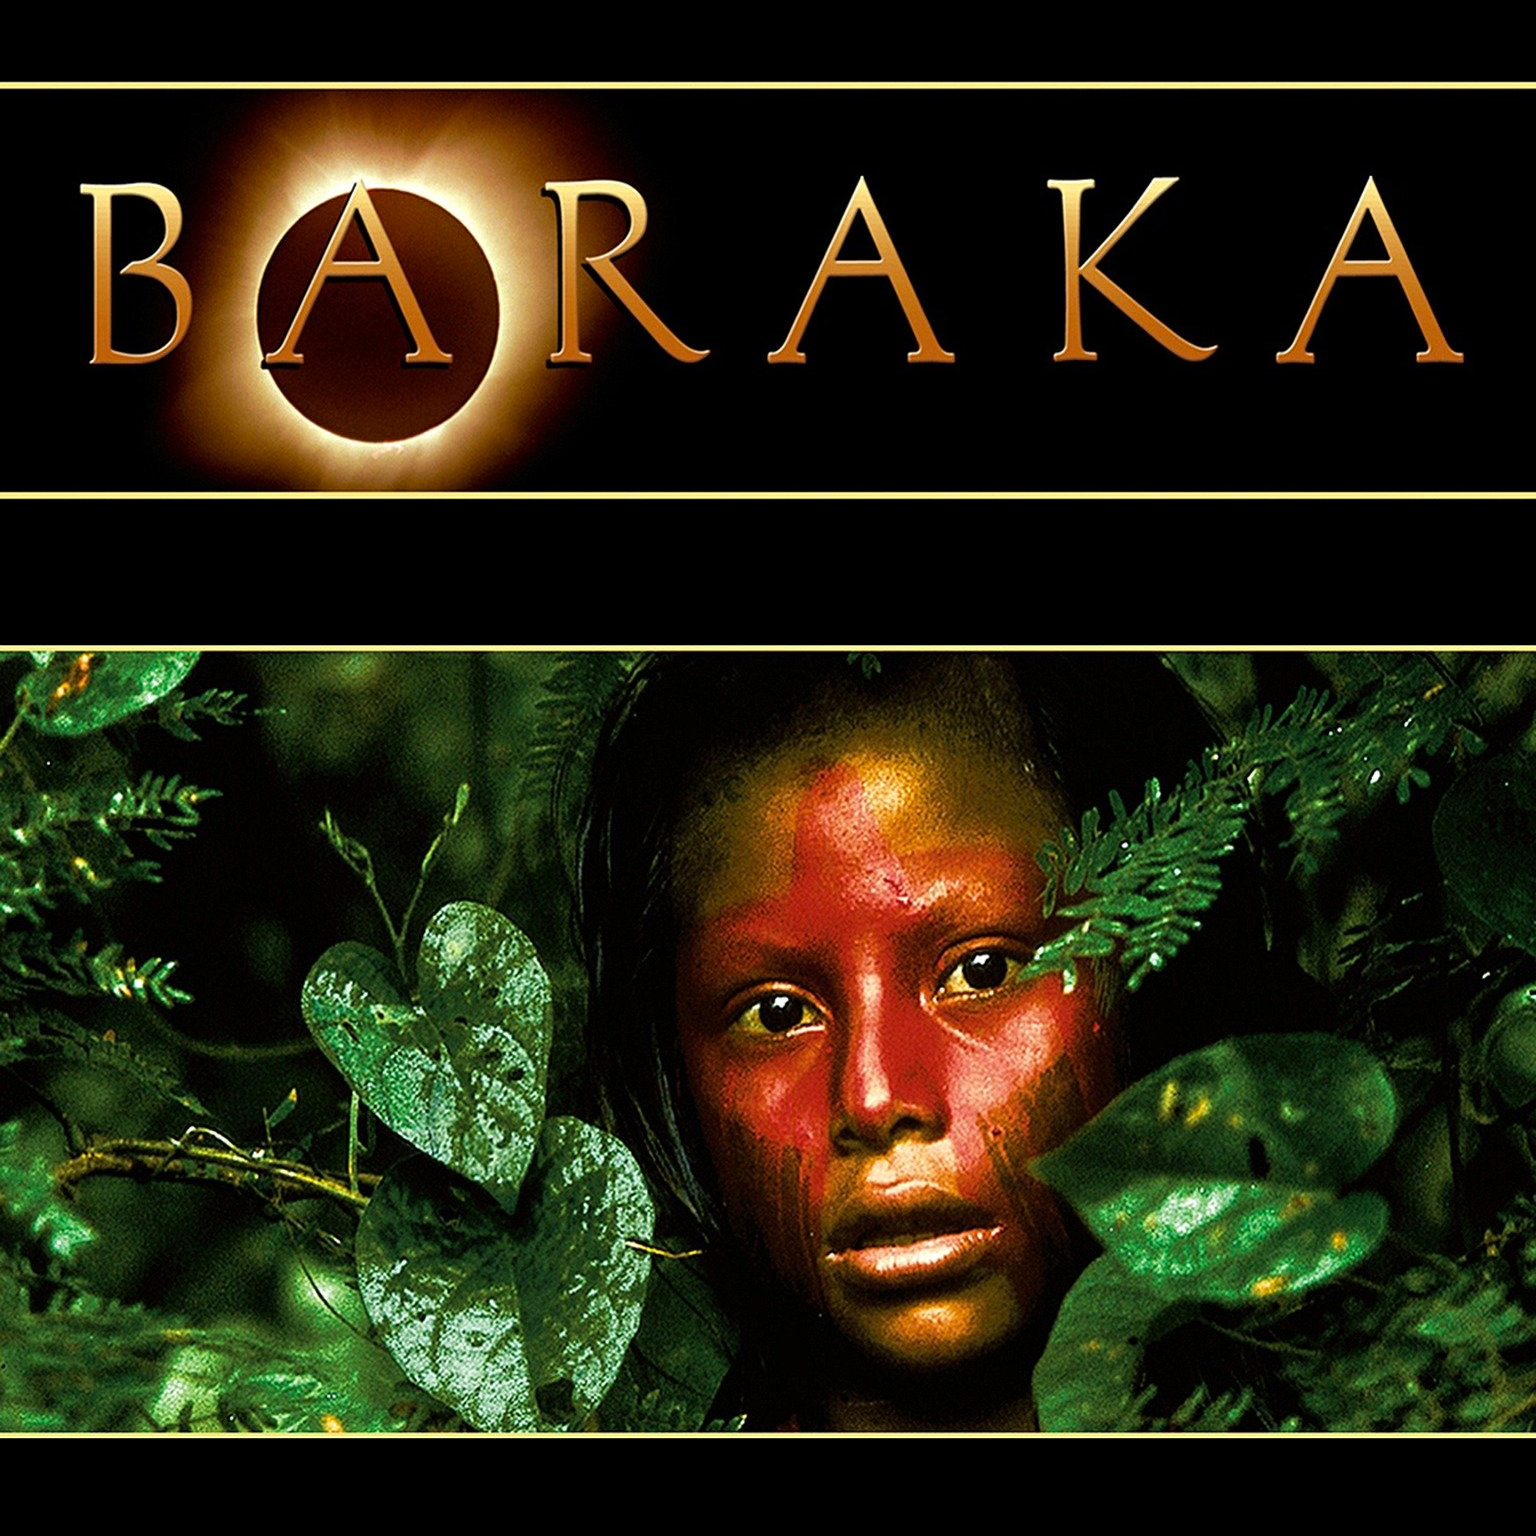 Baraka Film Poster